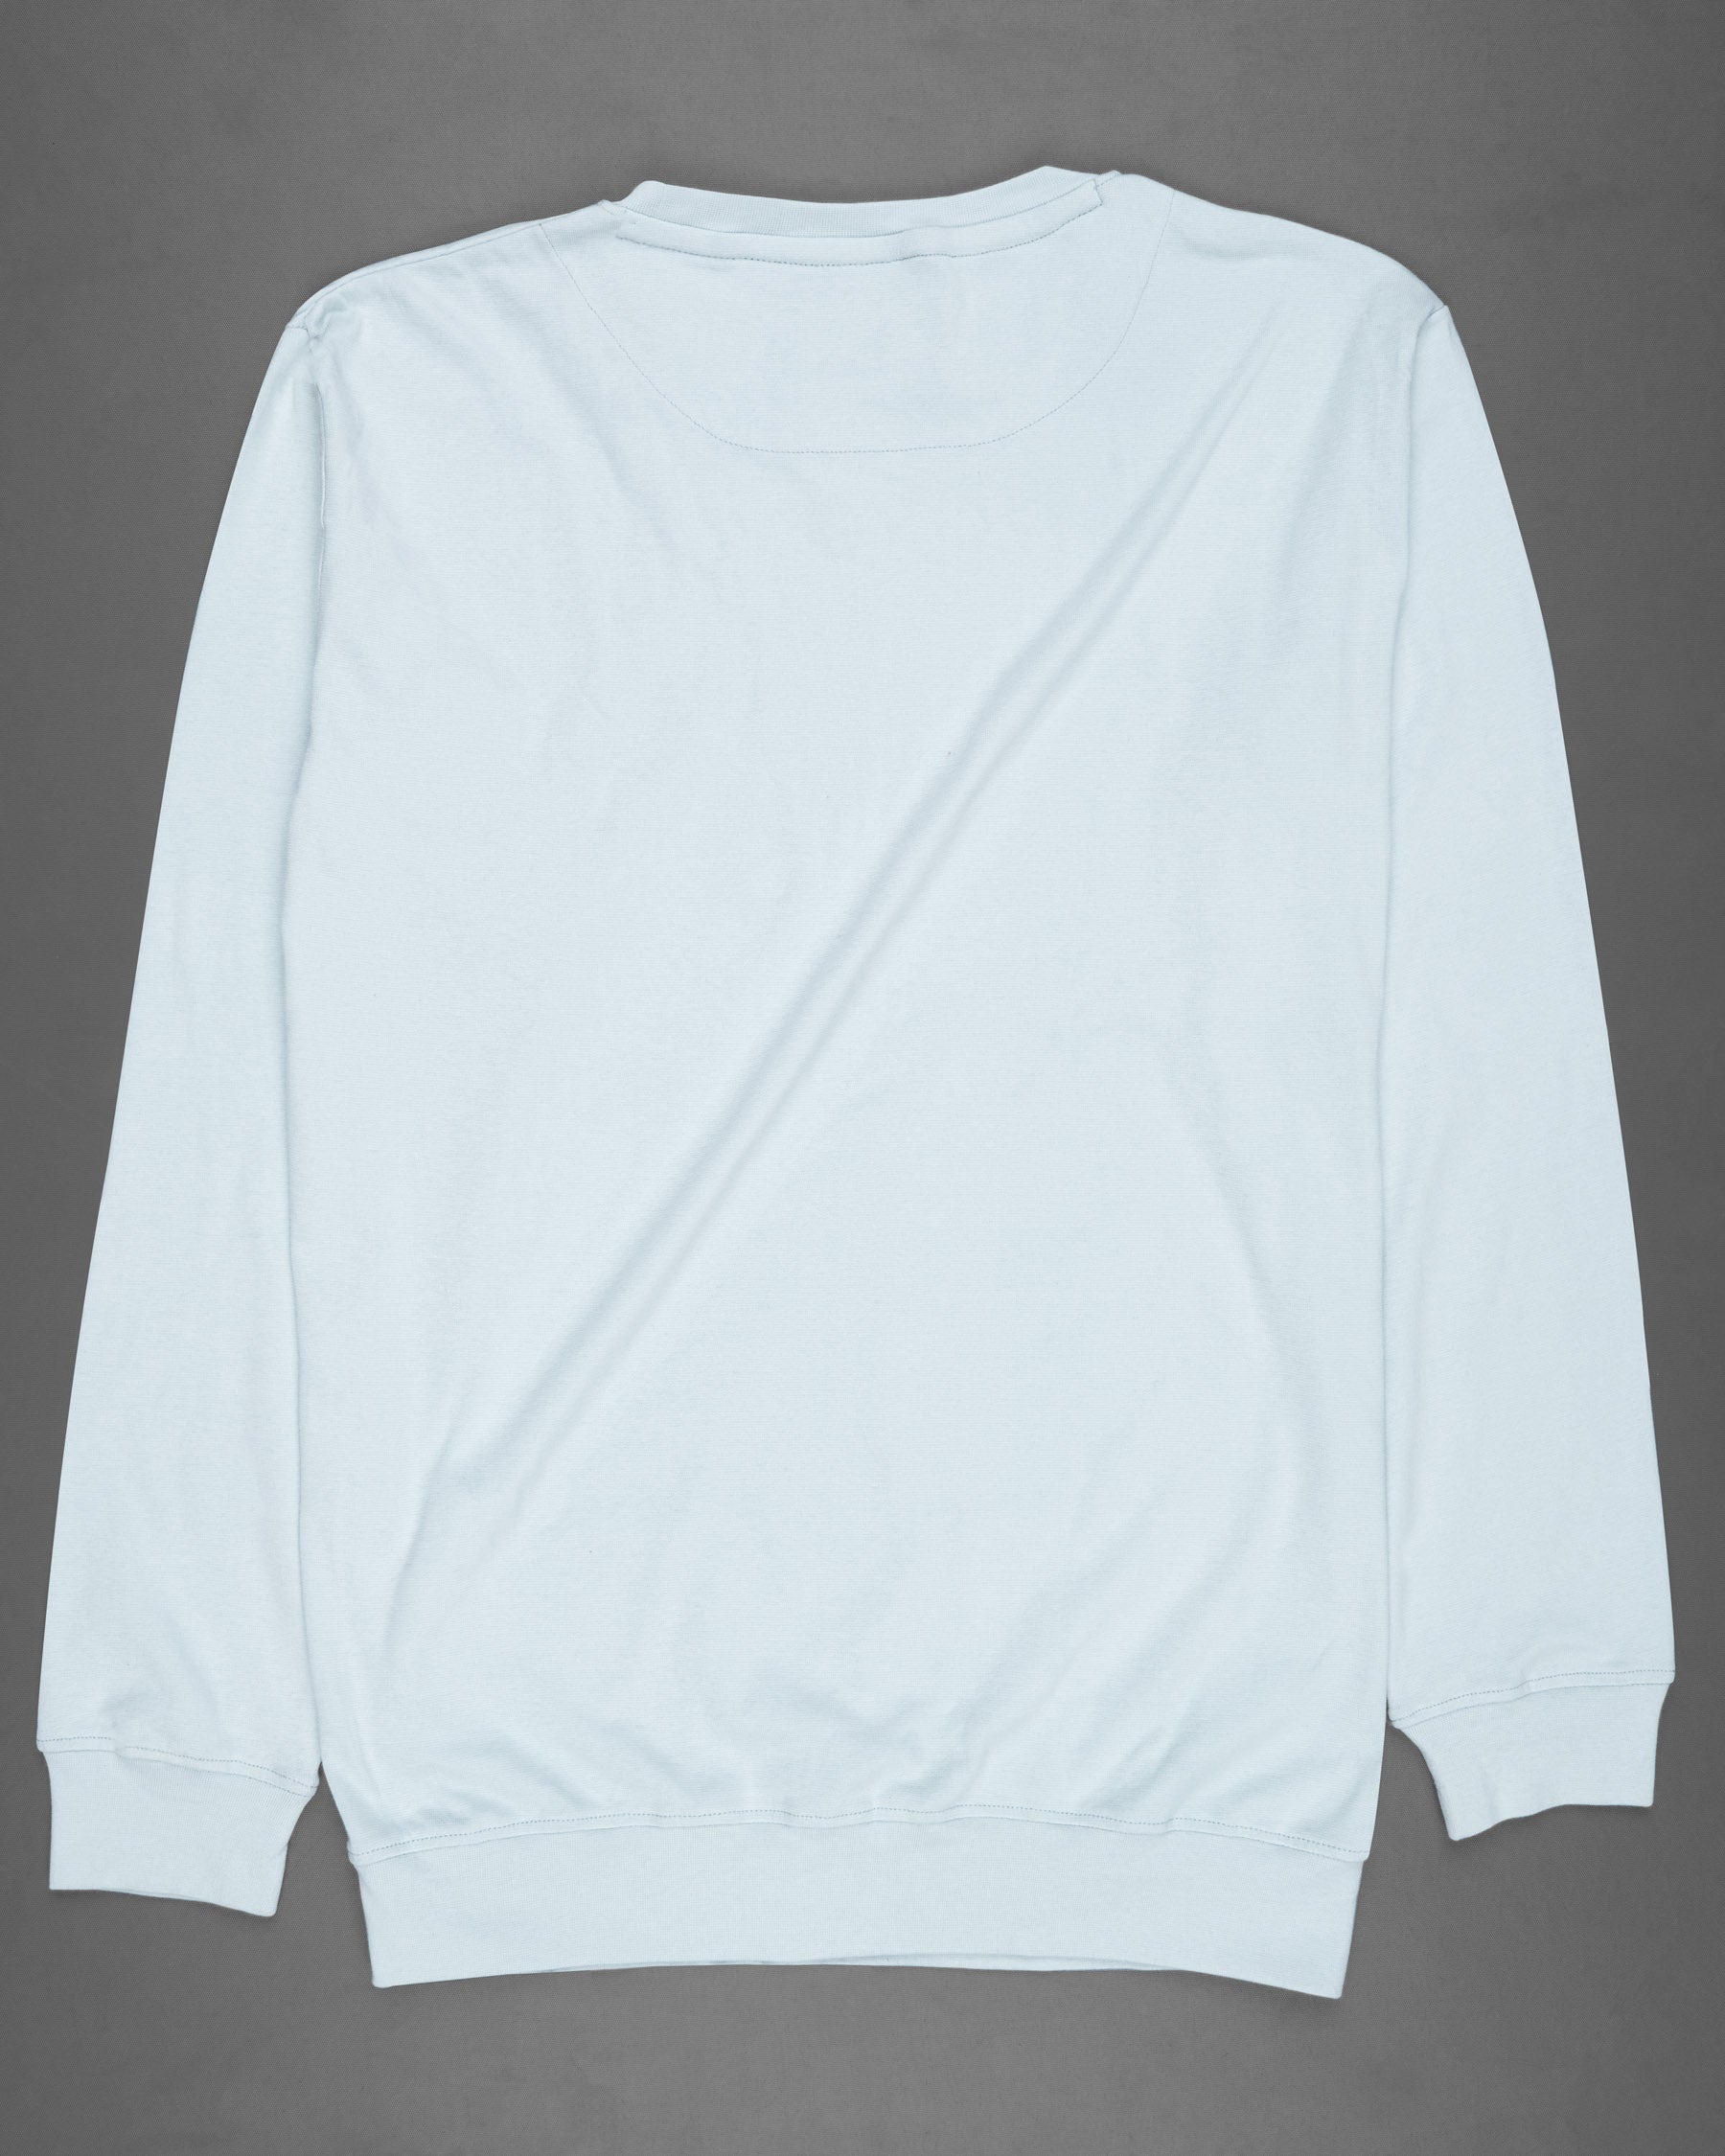 Pattents Blue Full Sleeve Premium Cotton Jersey Sweatshirt TS444-S, TS444-M, TS444-L, TS444-XL, TS444-XXL